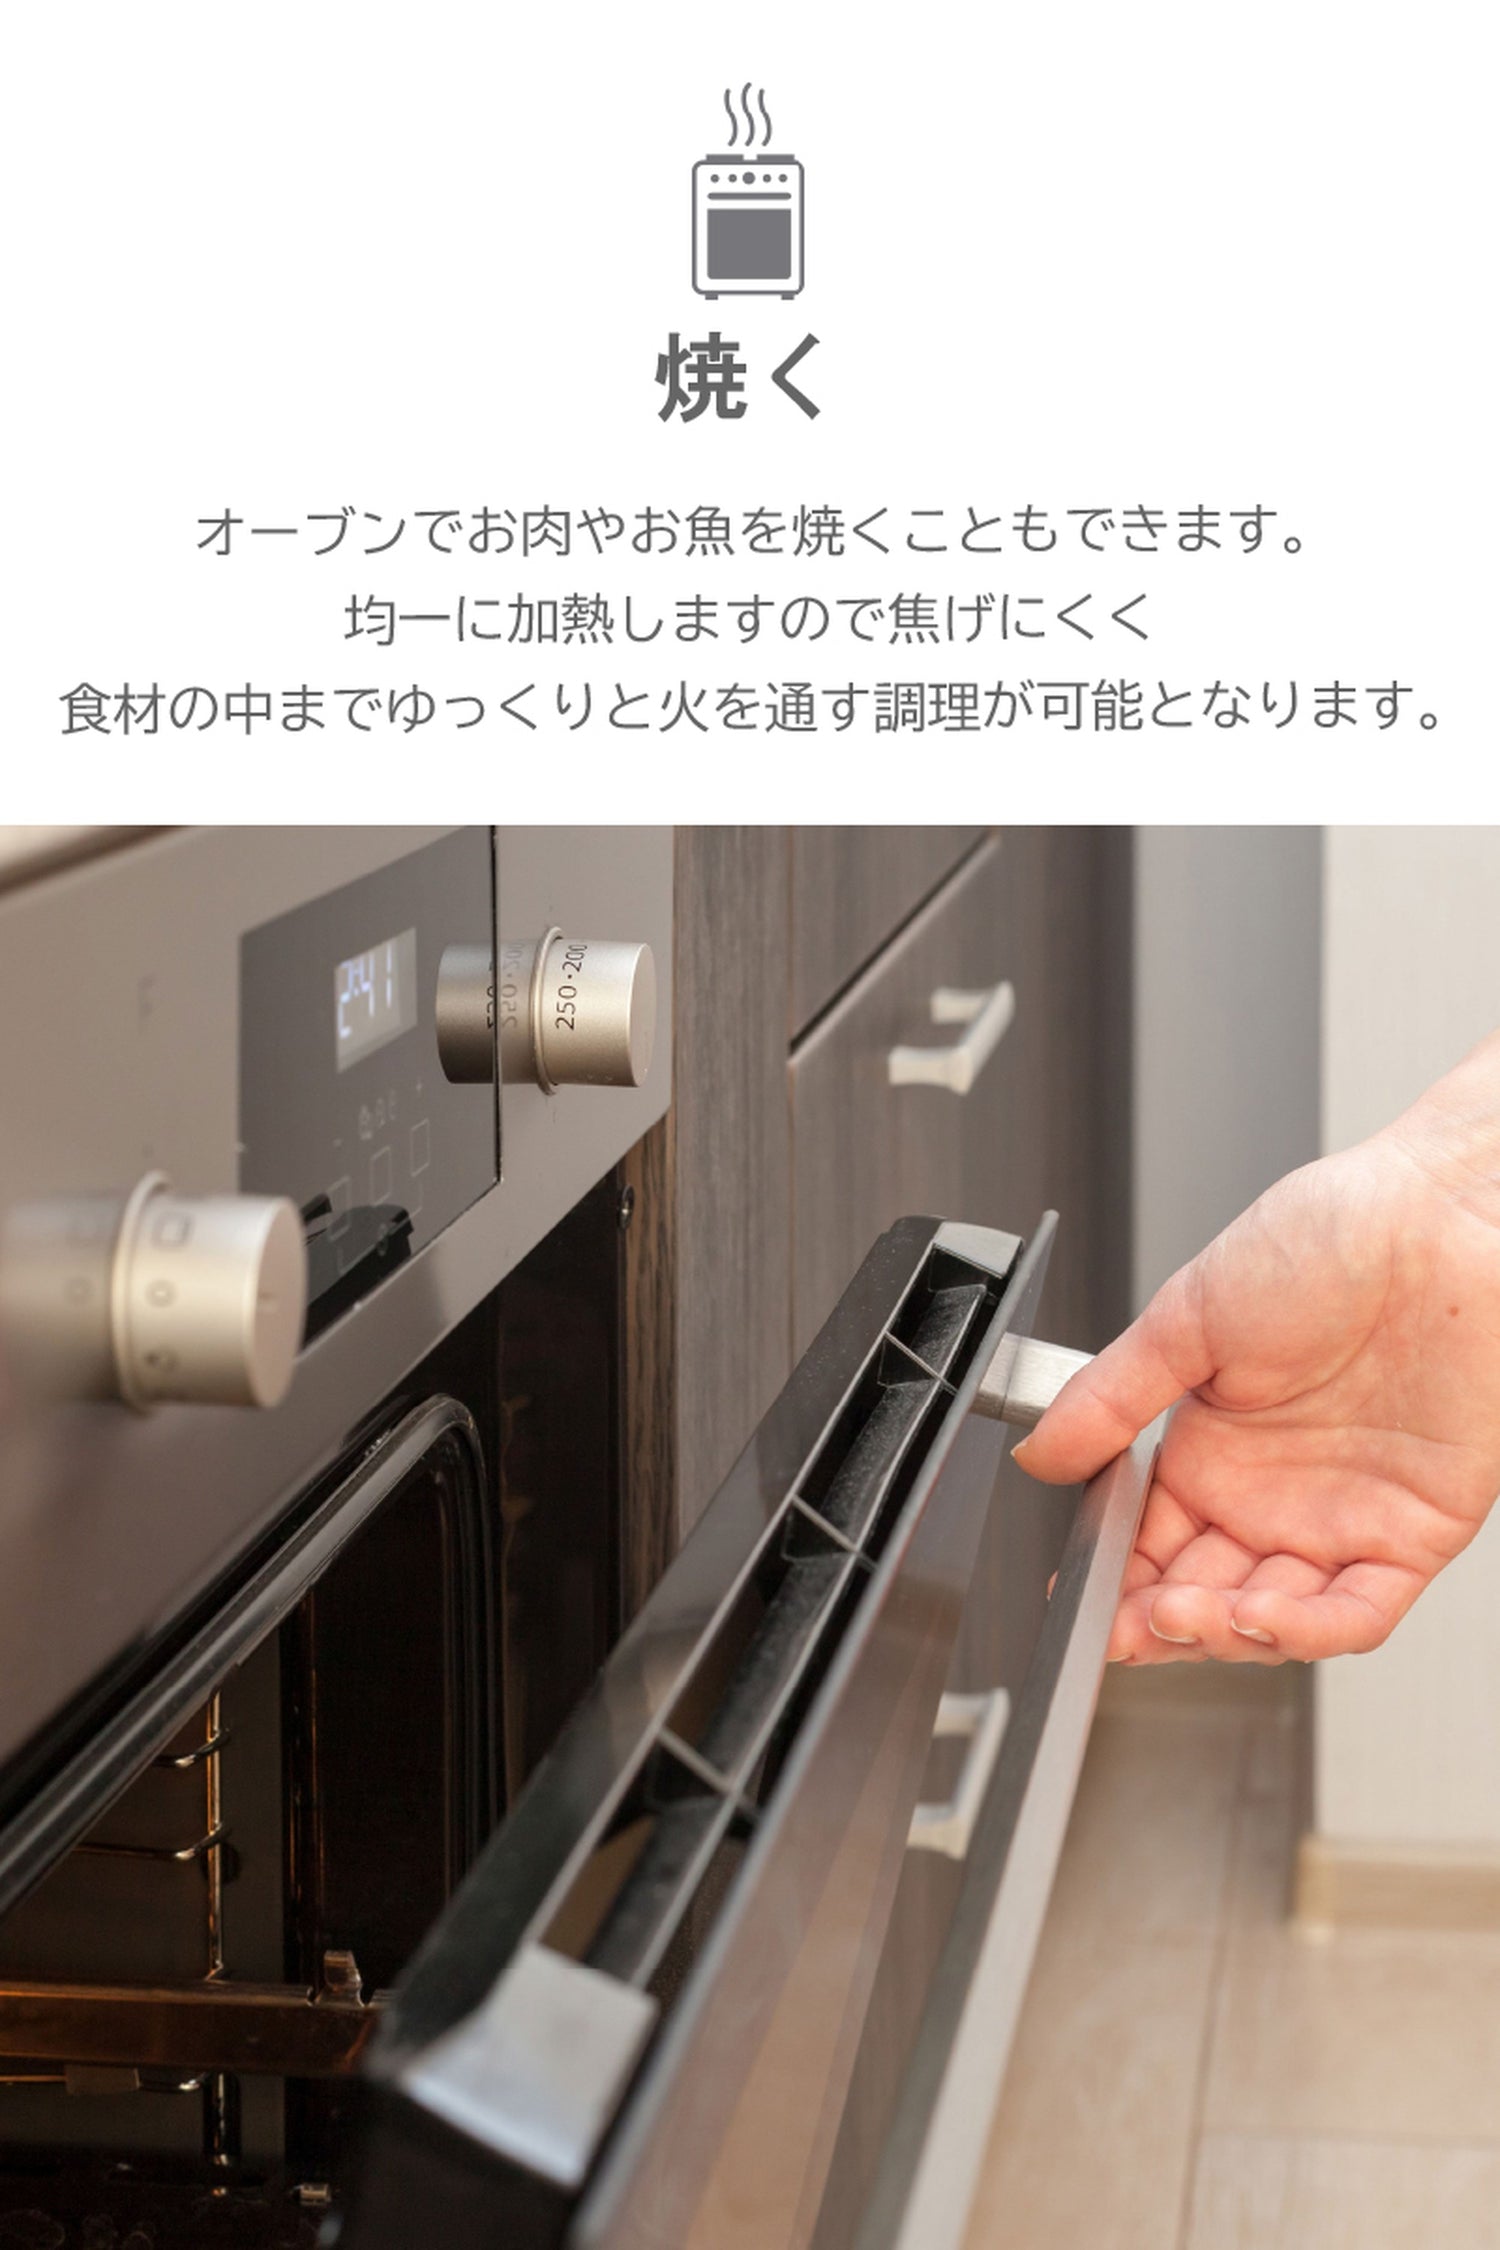 スタッシャー シリコンバッグ stasher 日本正規品 スタンドアップ Mサイズ 6色